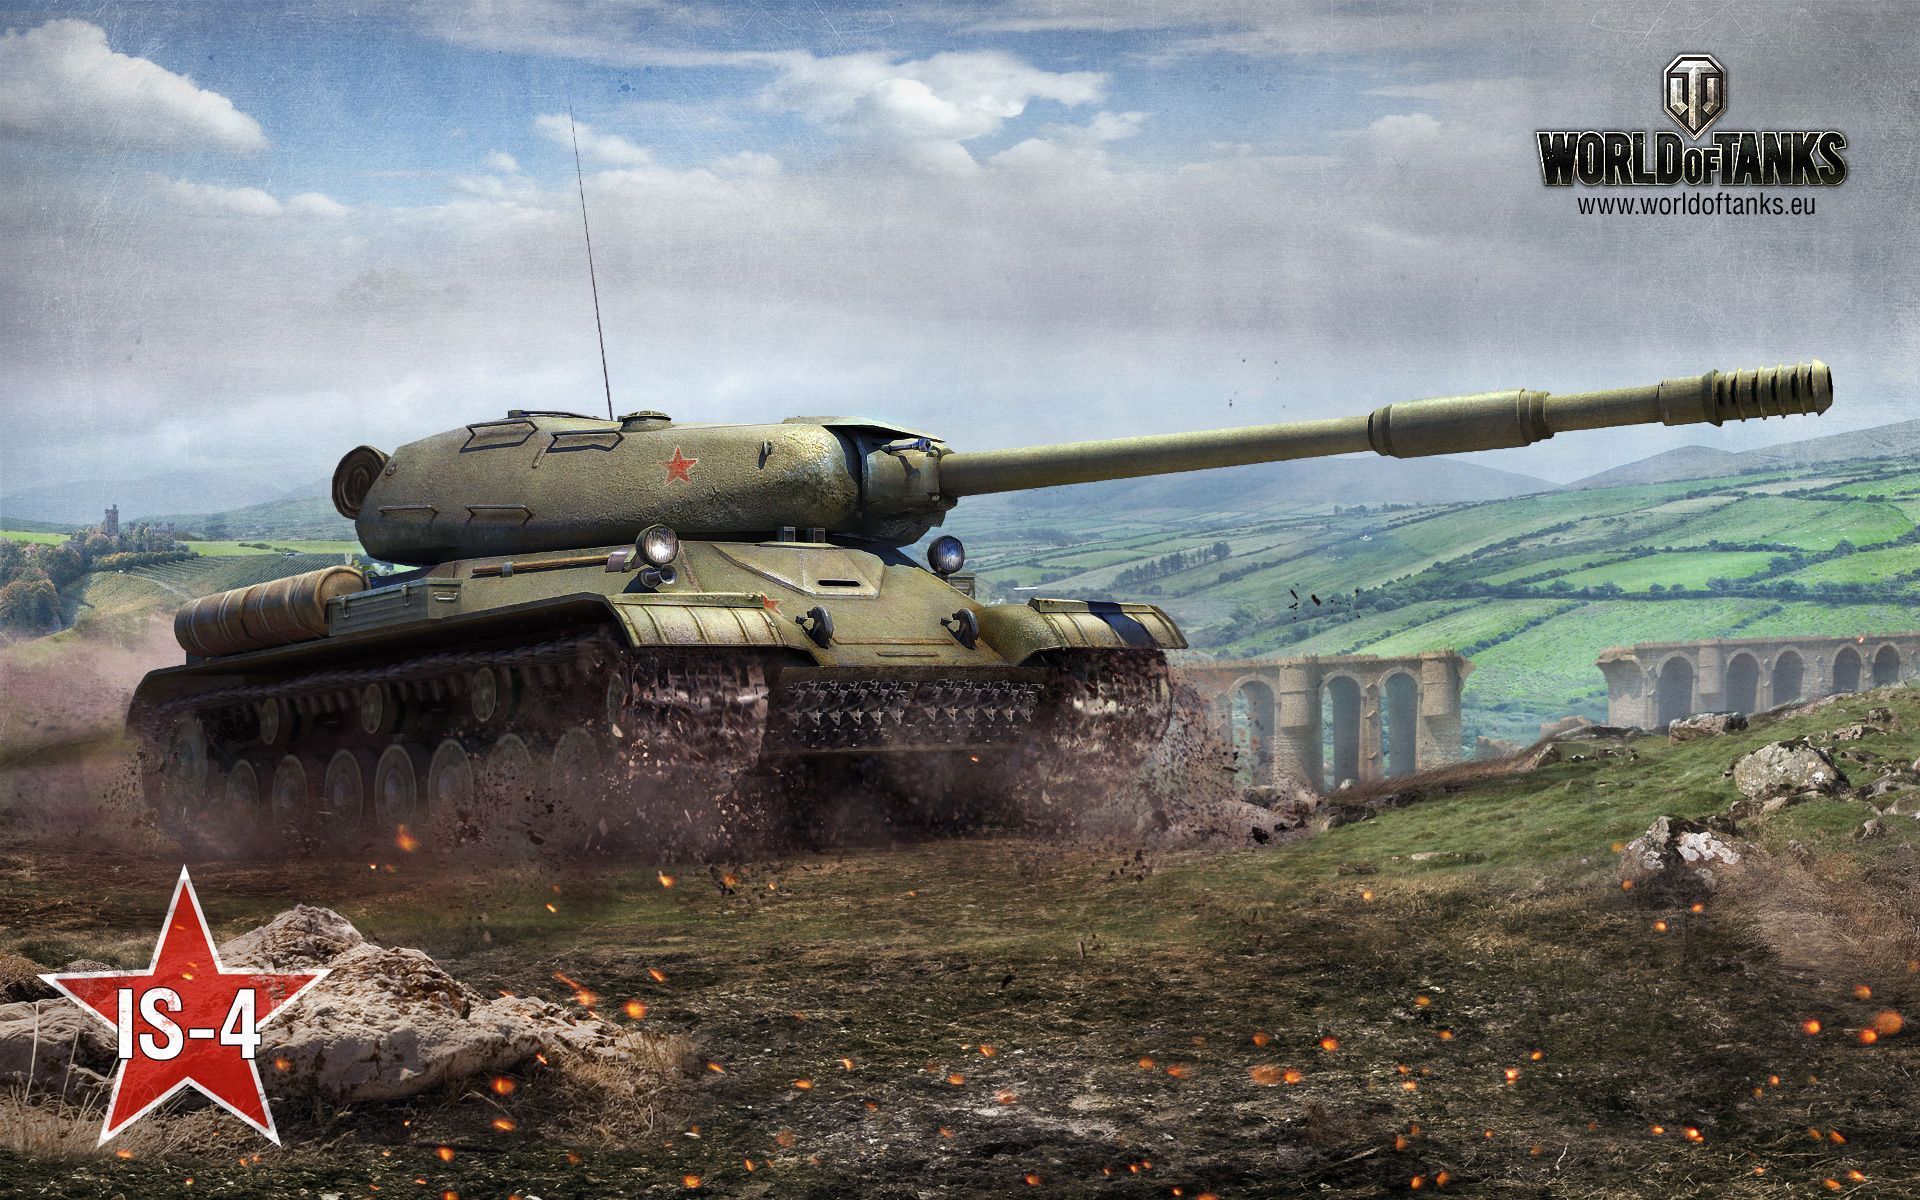 World of Tanks HD Wallpaper | 1920x1080 | ID:46662